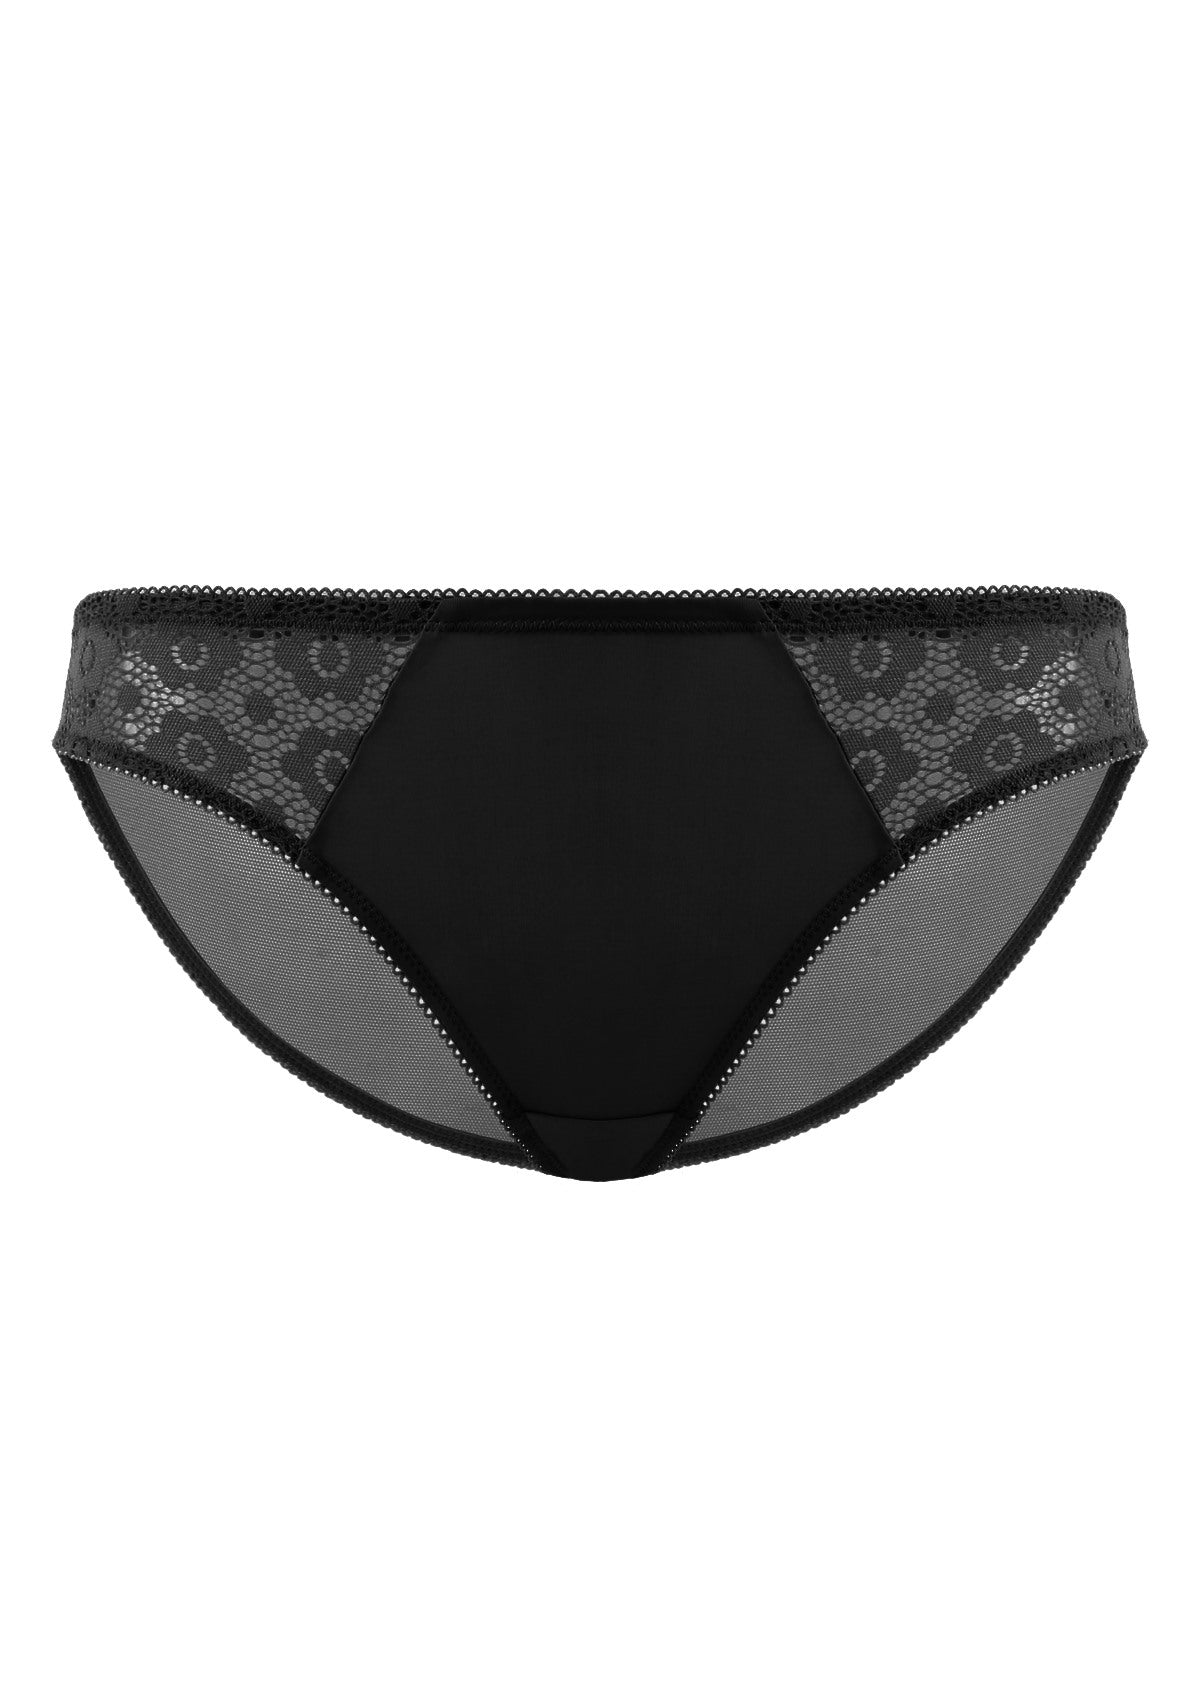 HSIA Serena Comfortable Trendy Lace Trim Bikini Underwear - XXXL / Champagne